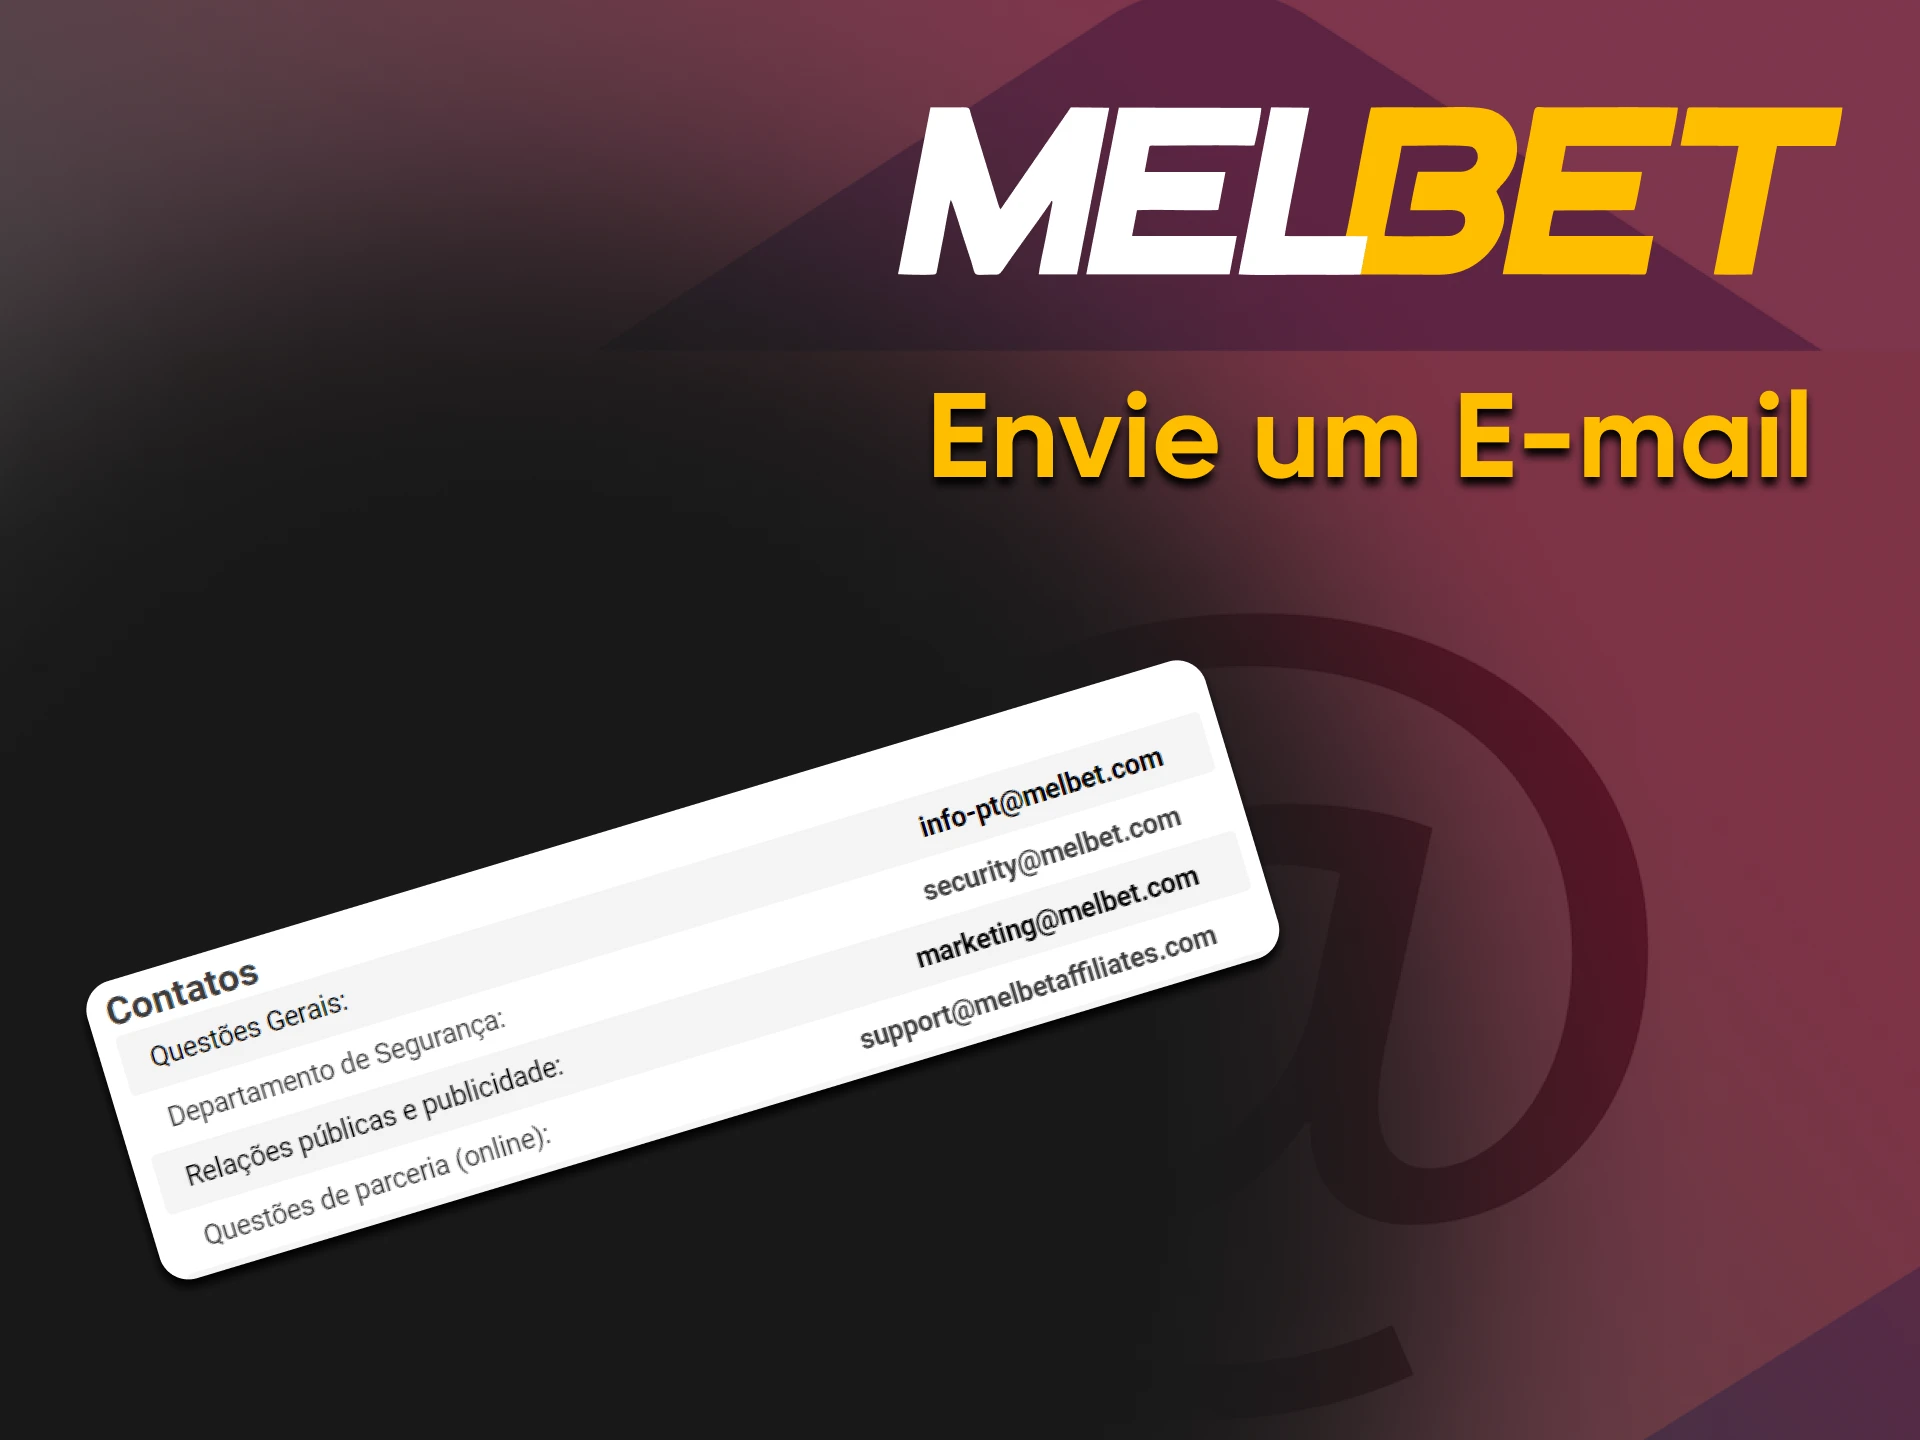 Ao escrever para E-mail, você pode entrar em contato com o suporte técnico da Melbet.